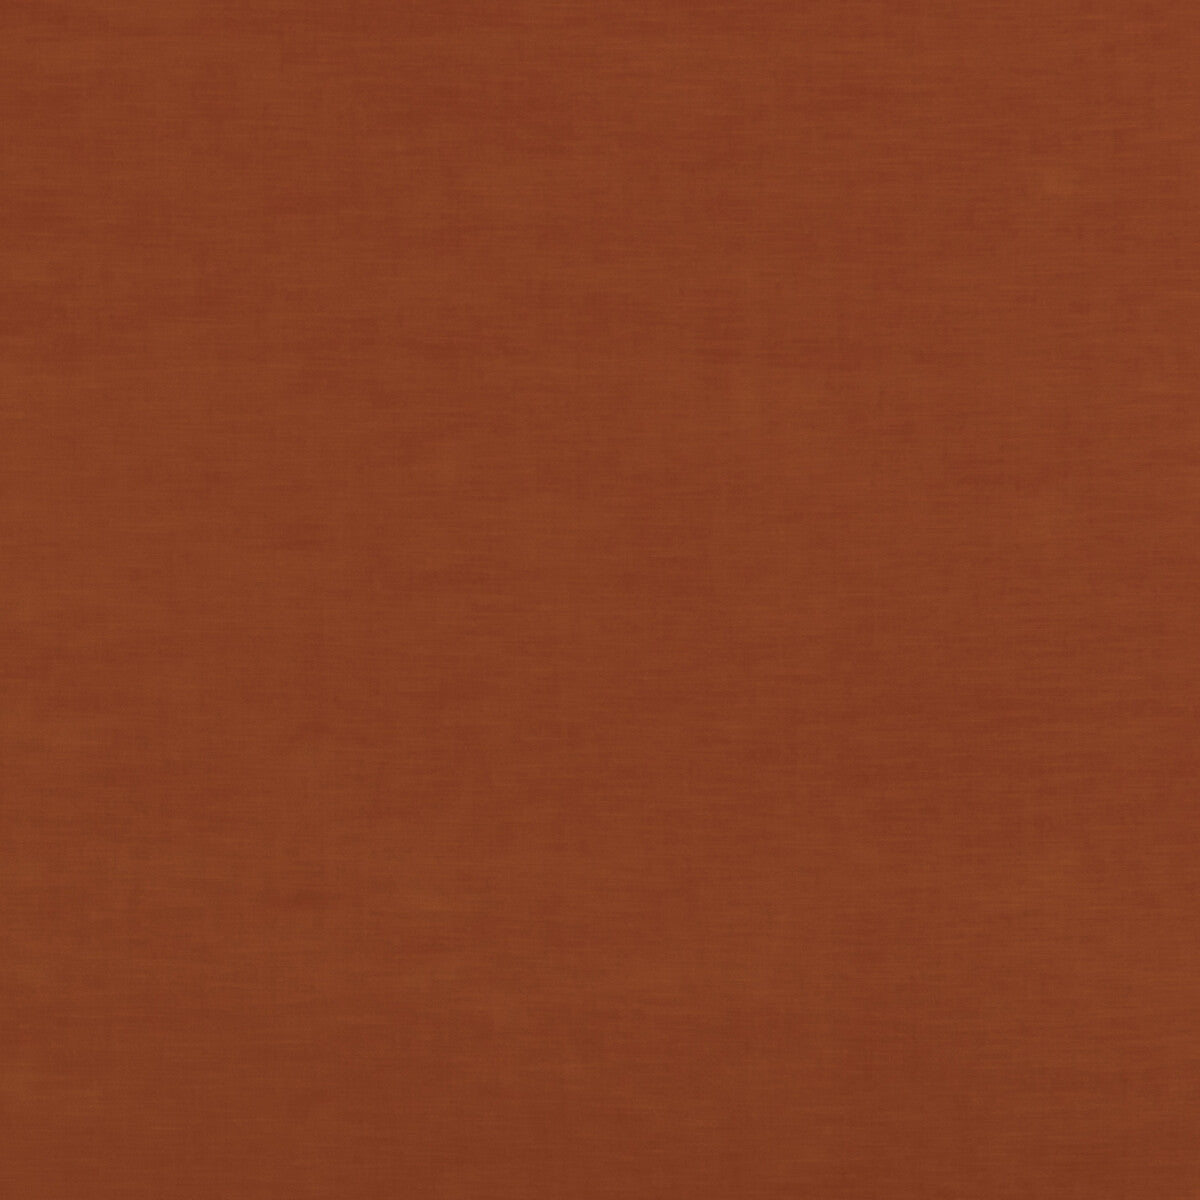 Quintessential Velvet fabric in rust color - pattern ED85359.395.0 - by Threads in the Quintessential Velvet collection